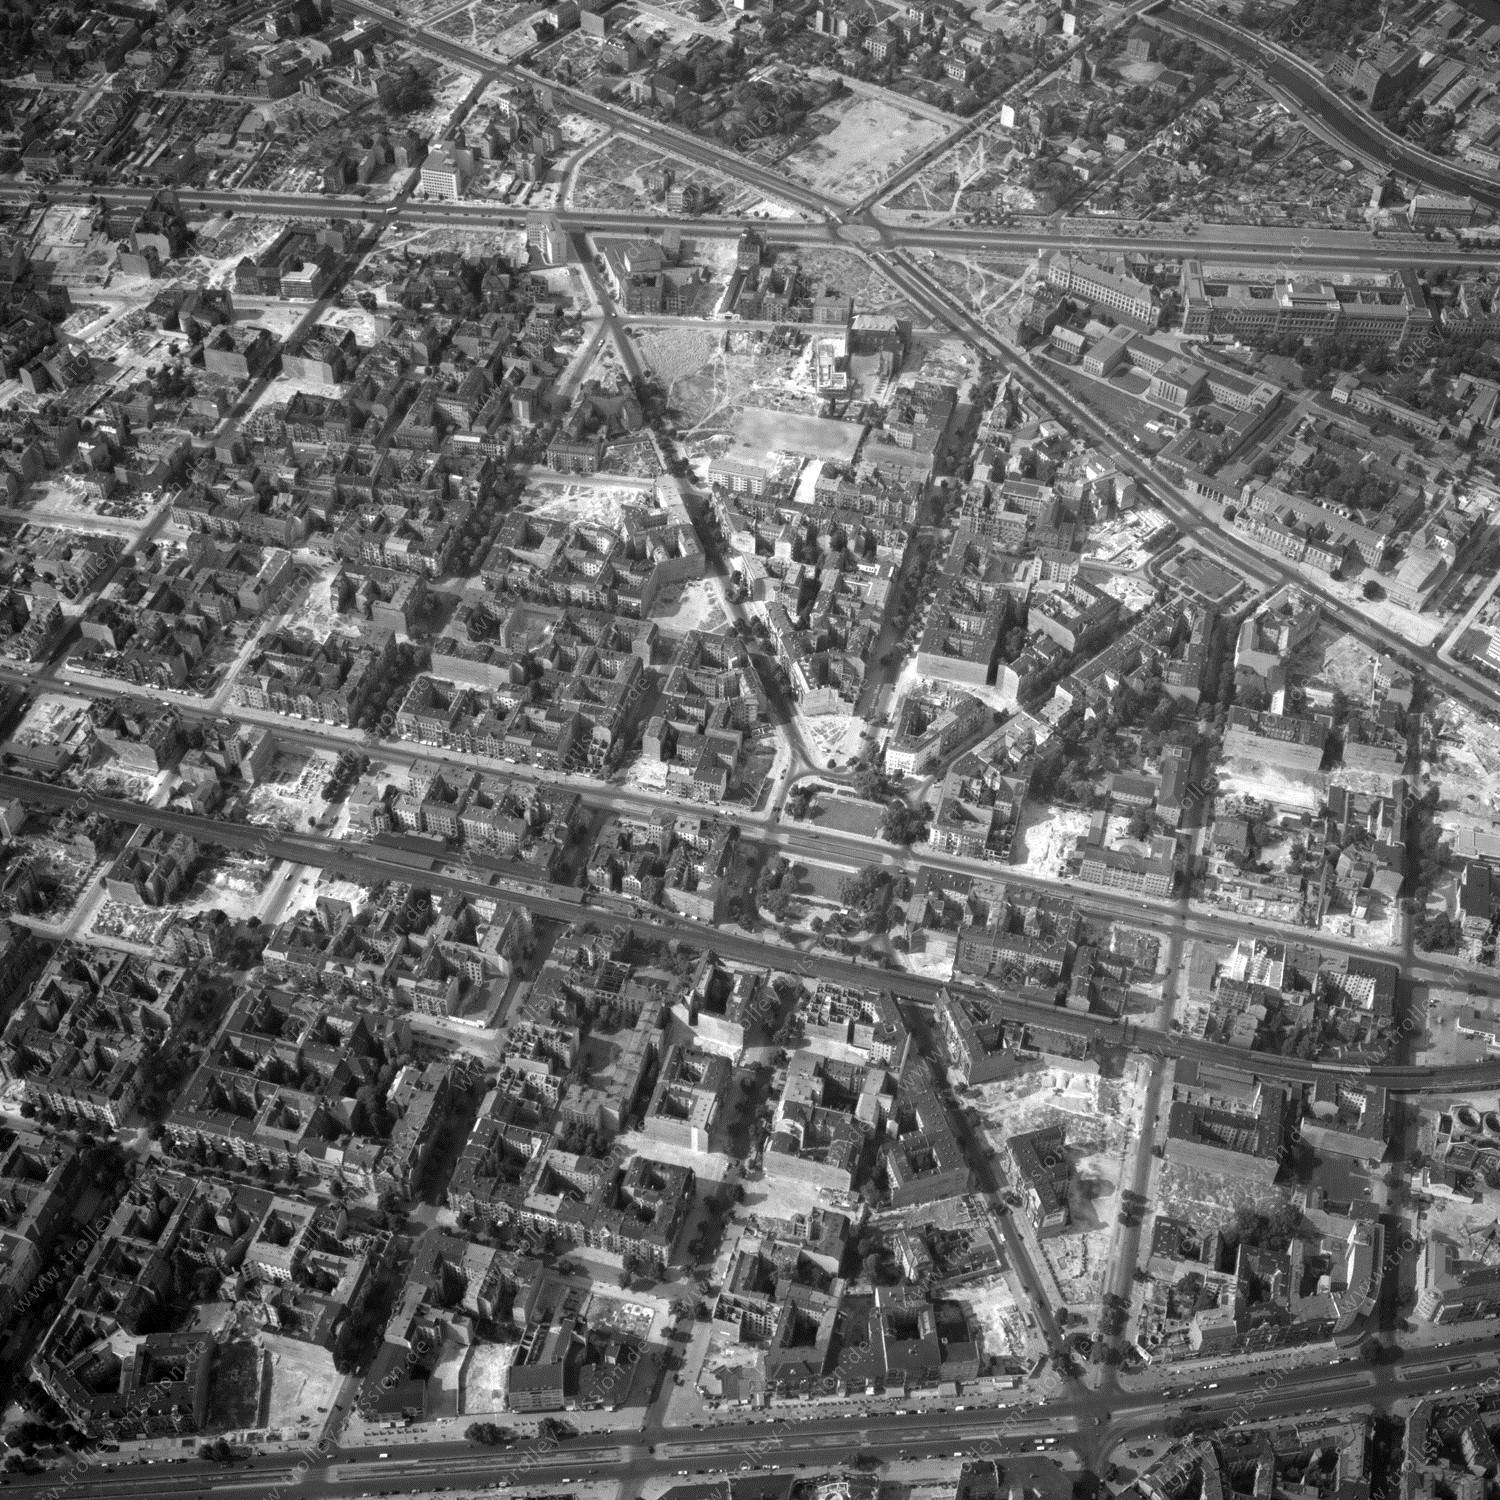 Alte Fotos und Luftbilder von Berlin - Luftbildaufnahme Nr. 07 - Historische Luftaufnahmen von West-Berlin aus dem Jahr 1954 - Flugstrecke Yankee